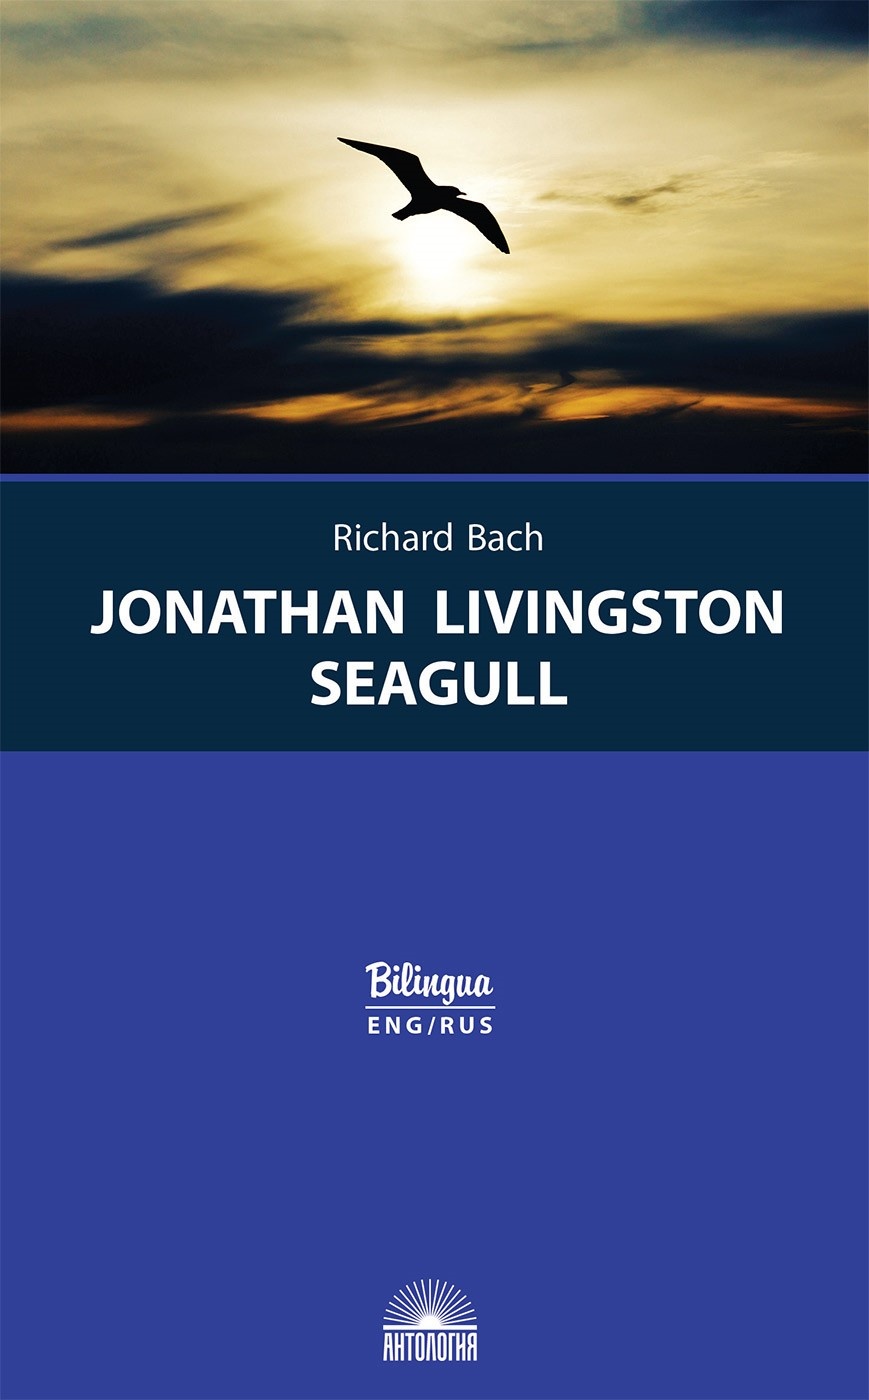 Чайка по имени Джонатан Ливингстон (Jonathan Livingston Seagull). Издание с параллельным текстом: на англ. и рус. языках